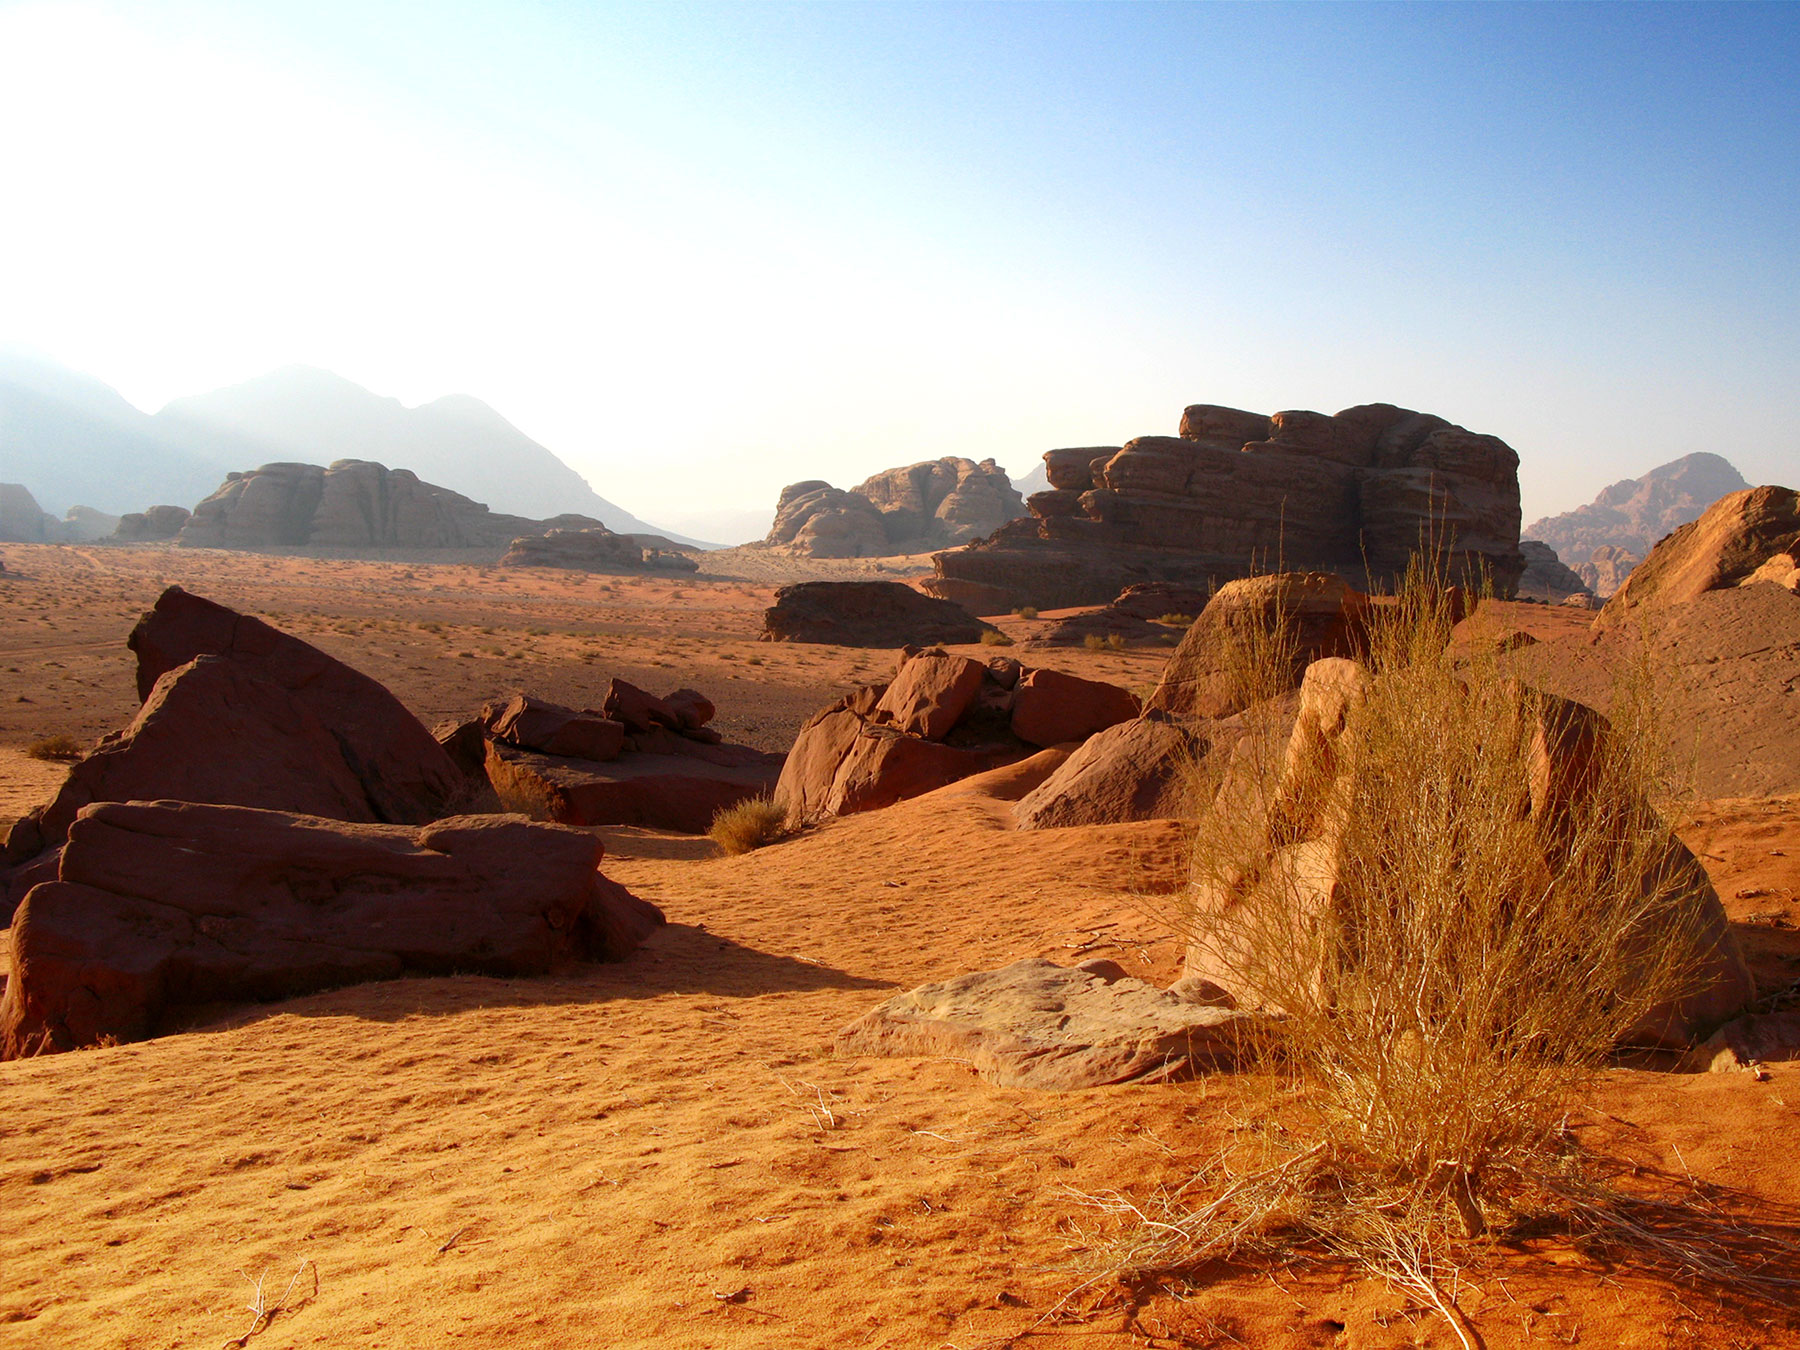 Desert trip in Wadi Rum